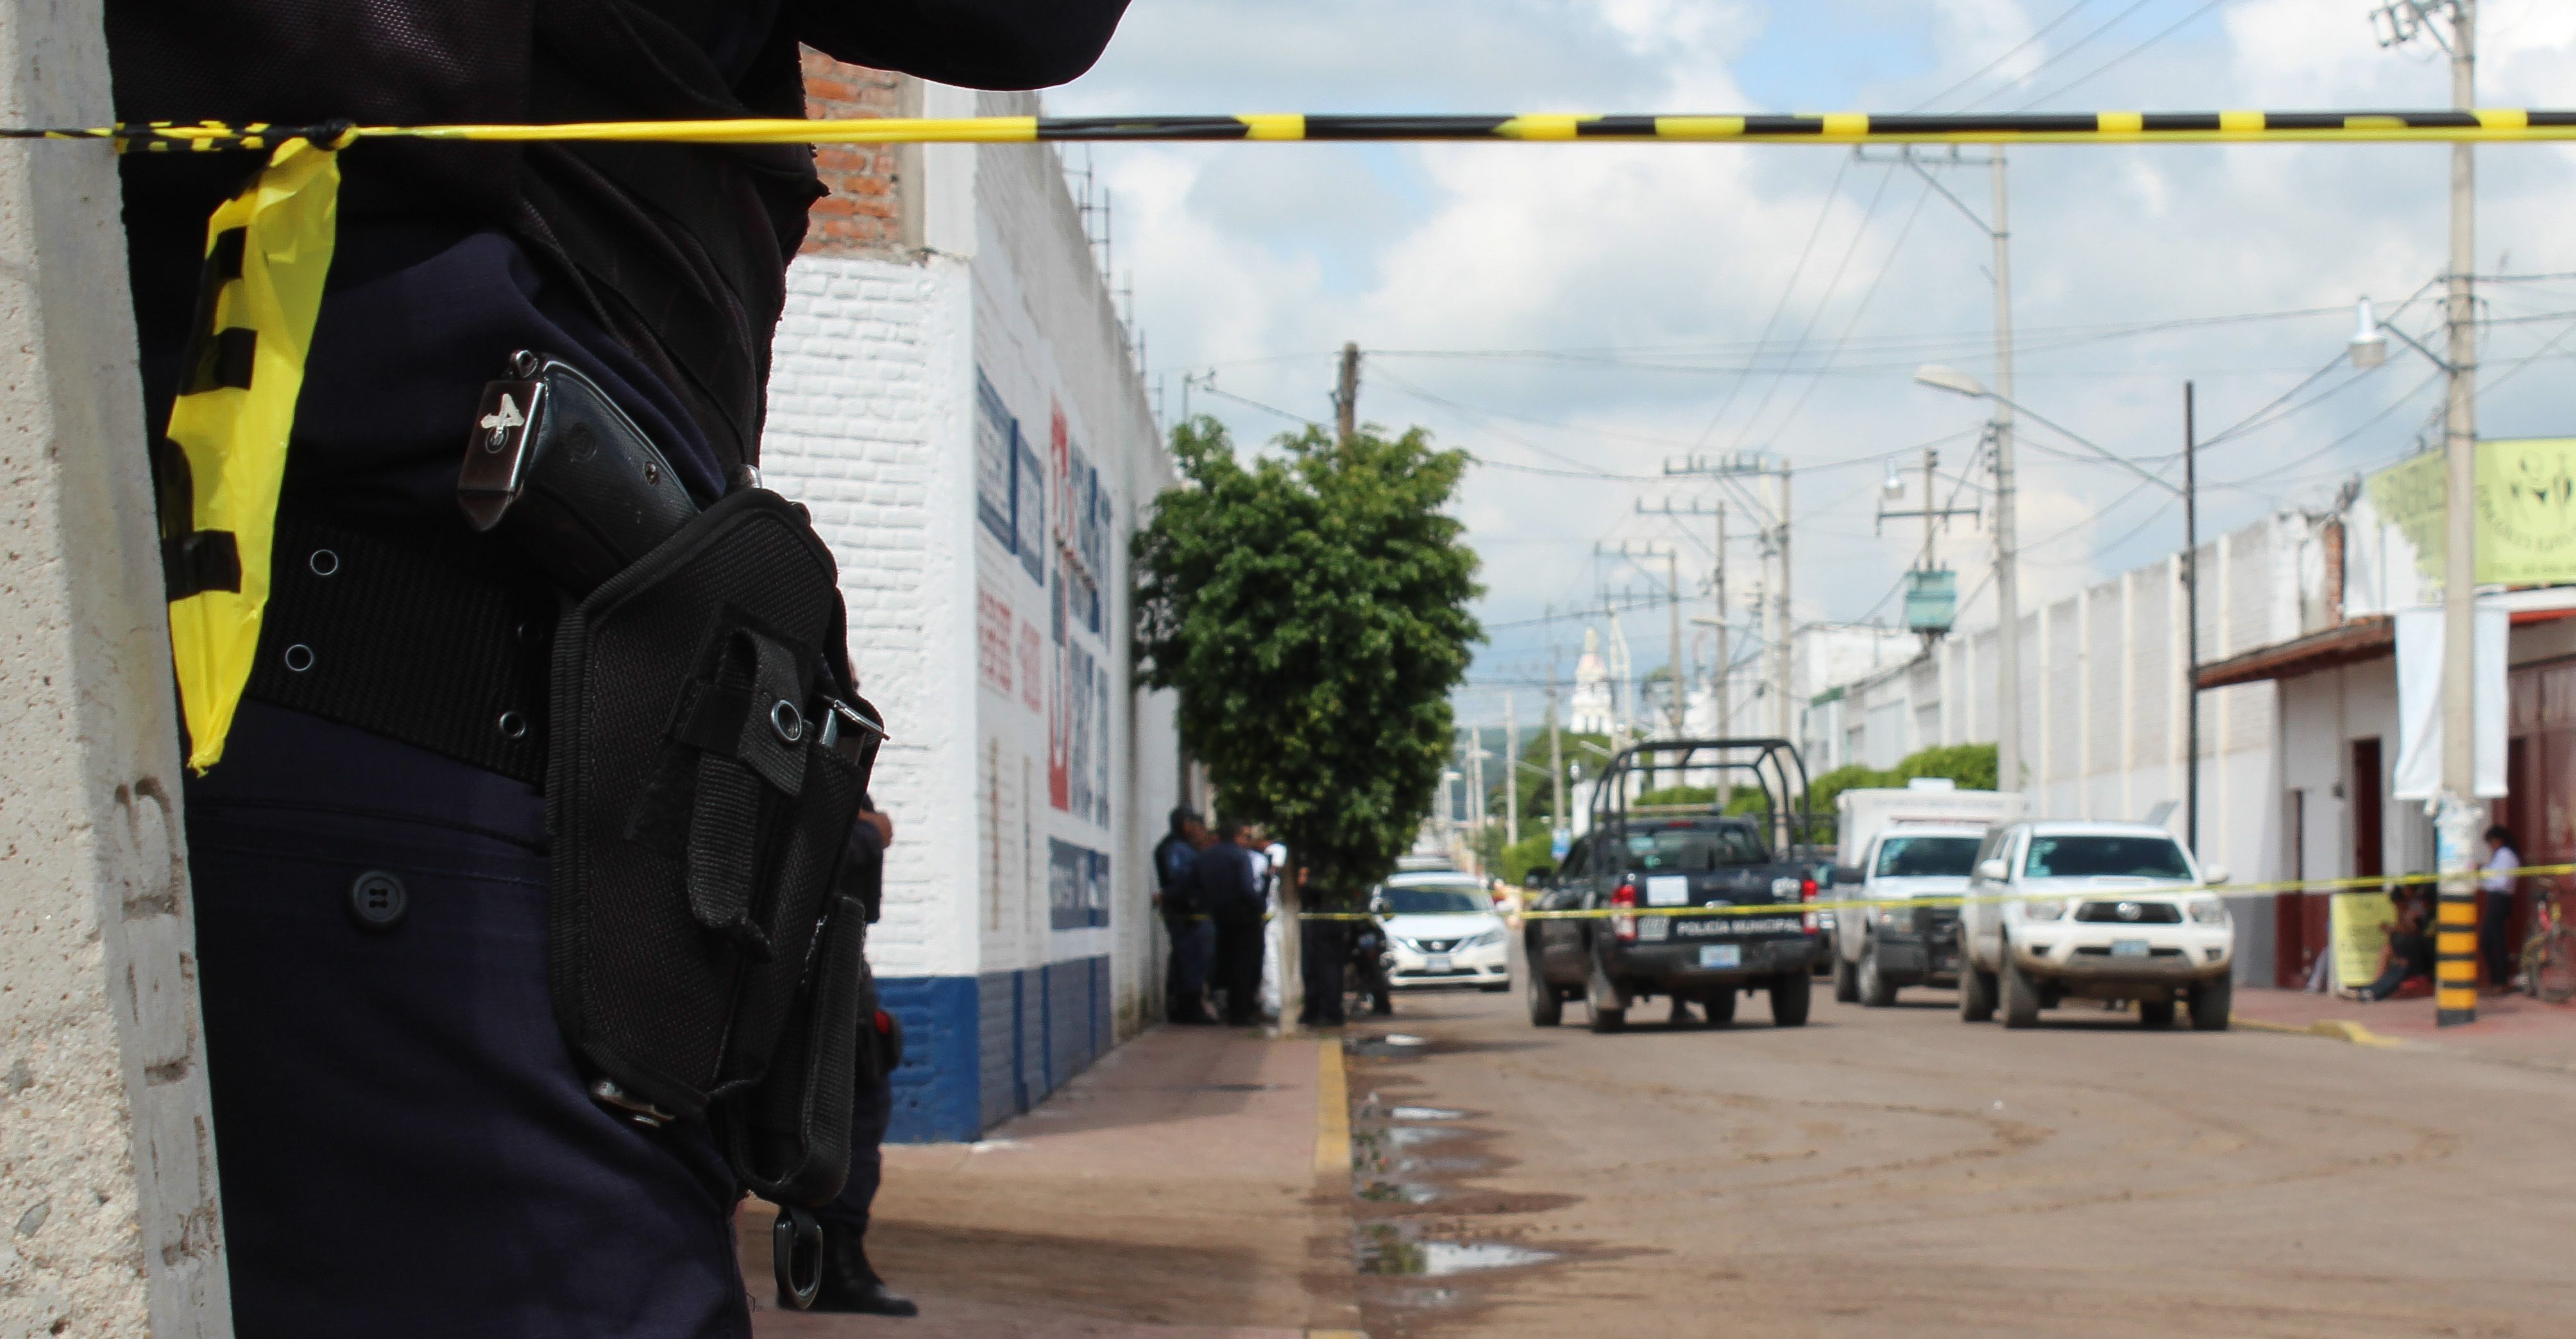 Detienen a oficiales municipales por secuestrar a policías de Guanajuato